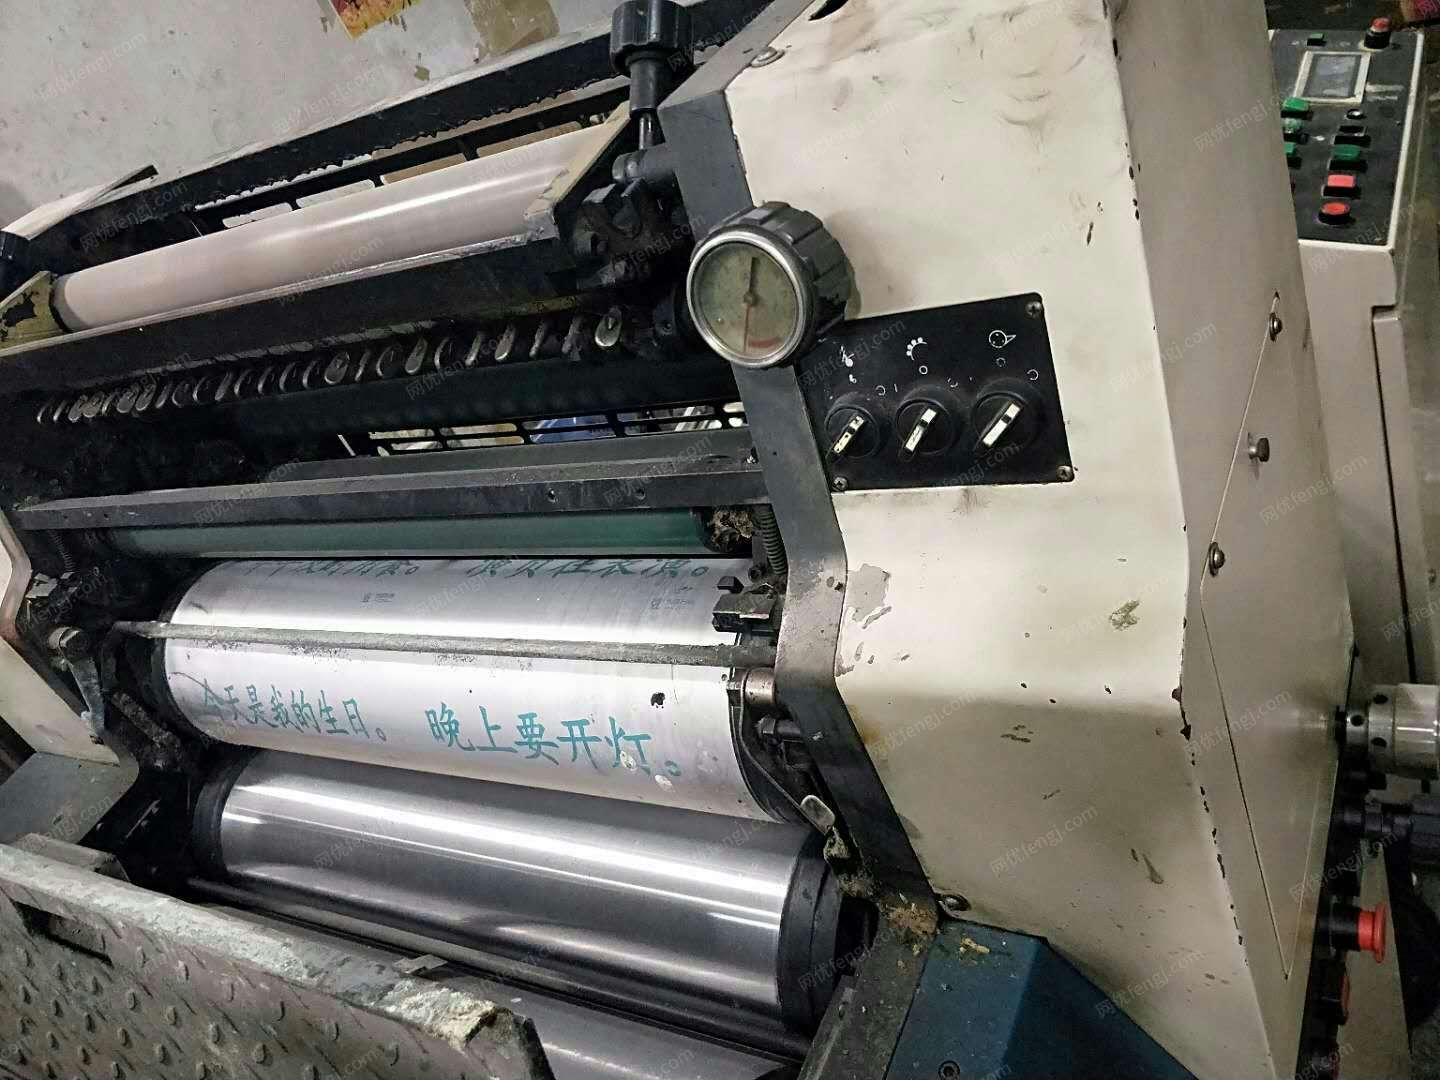 印刷厂出售北人国产大四开四色印刷机1台.有图片.另有1台朋友的台湾产木板拼接机.报价